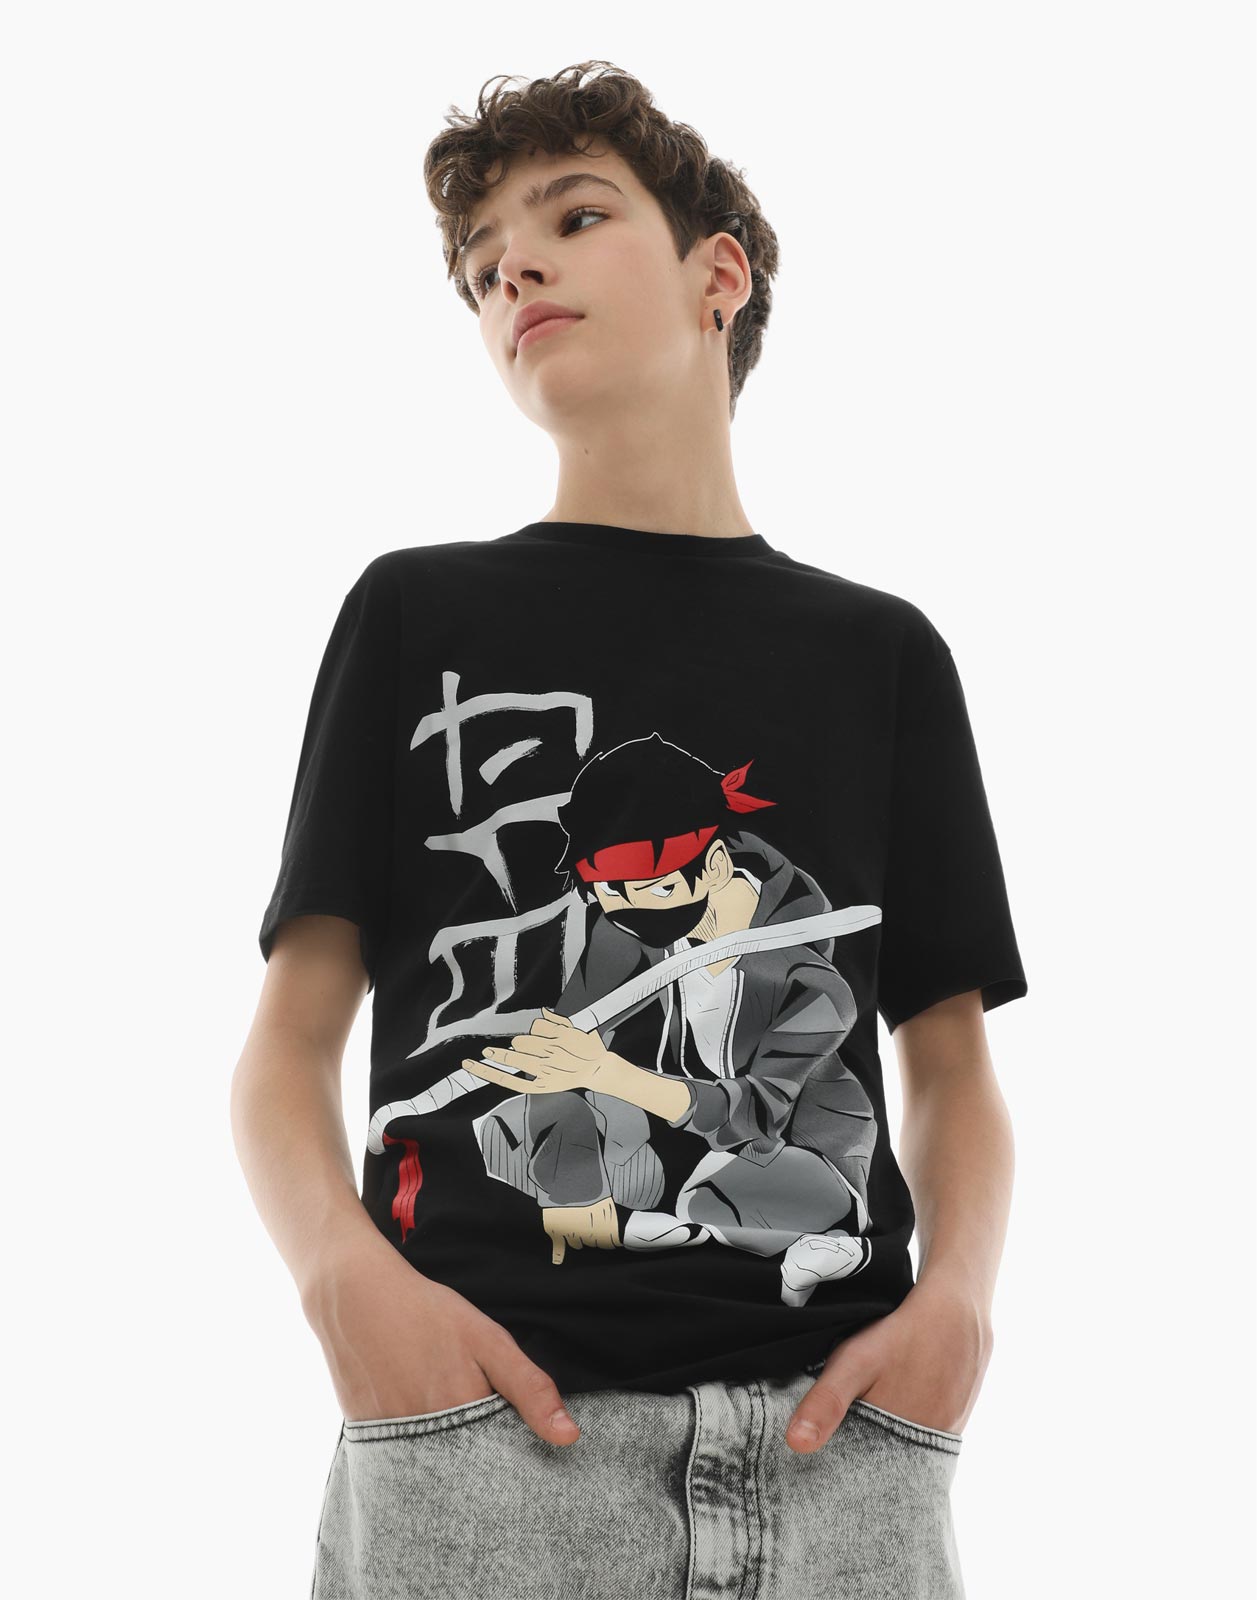 Чёрная футболка с аниме-принтом для мальчика 10-12л/146-152